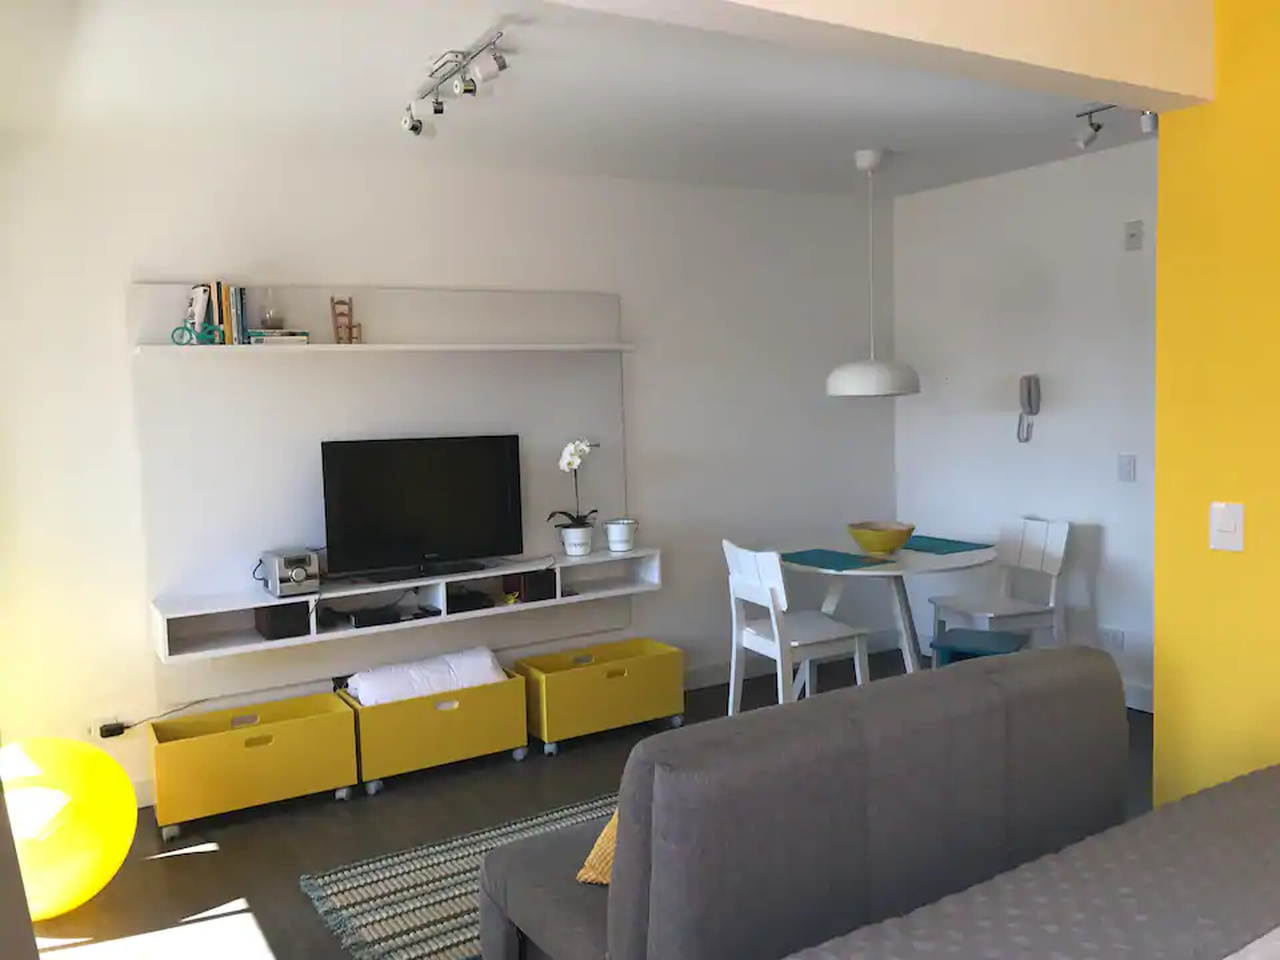 Melhores Airbnb Curitiba - 13 Casas e Apartamentos para Ficar